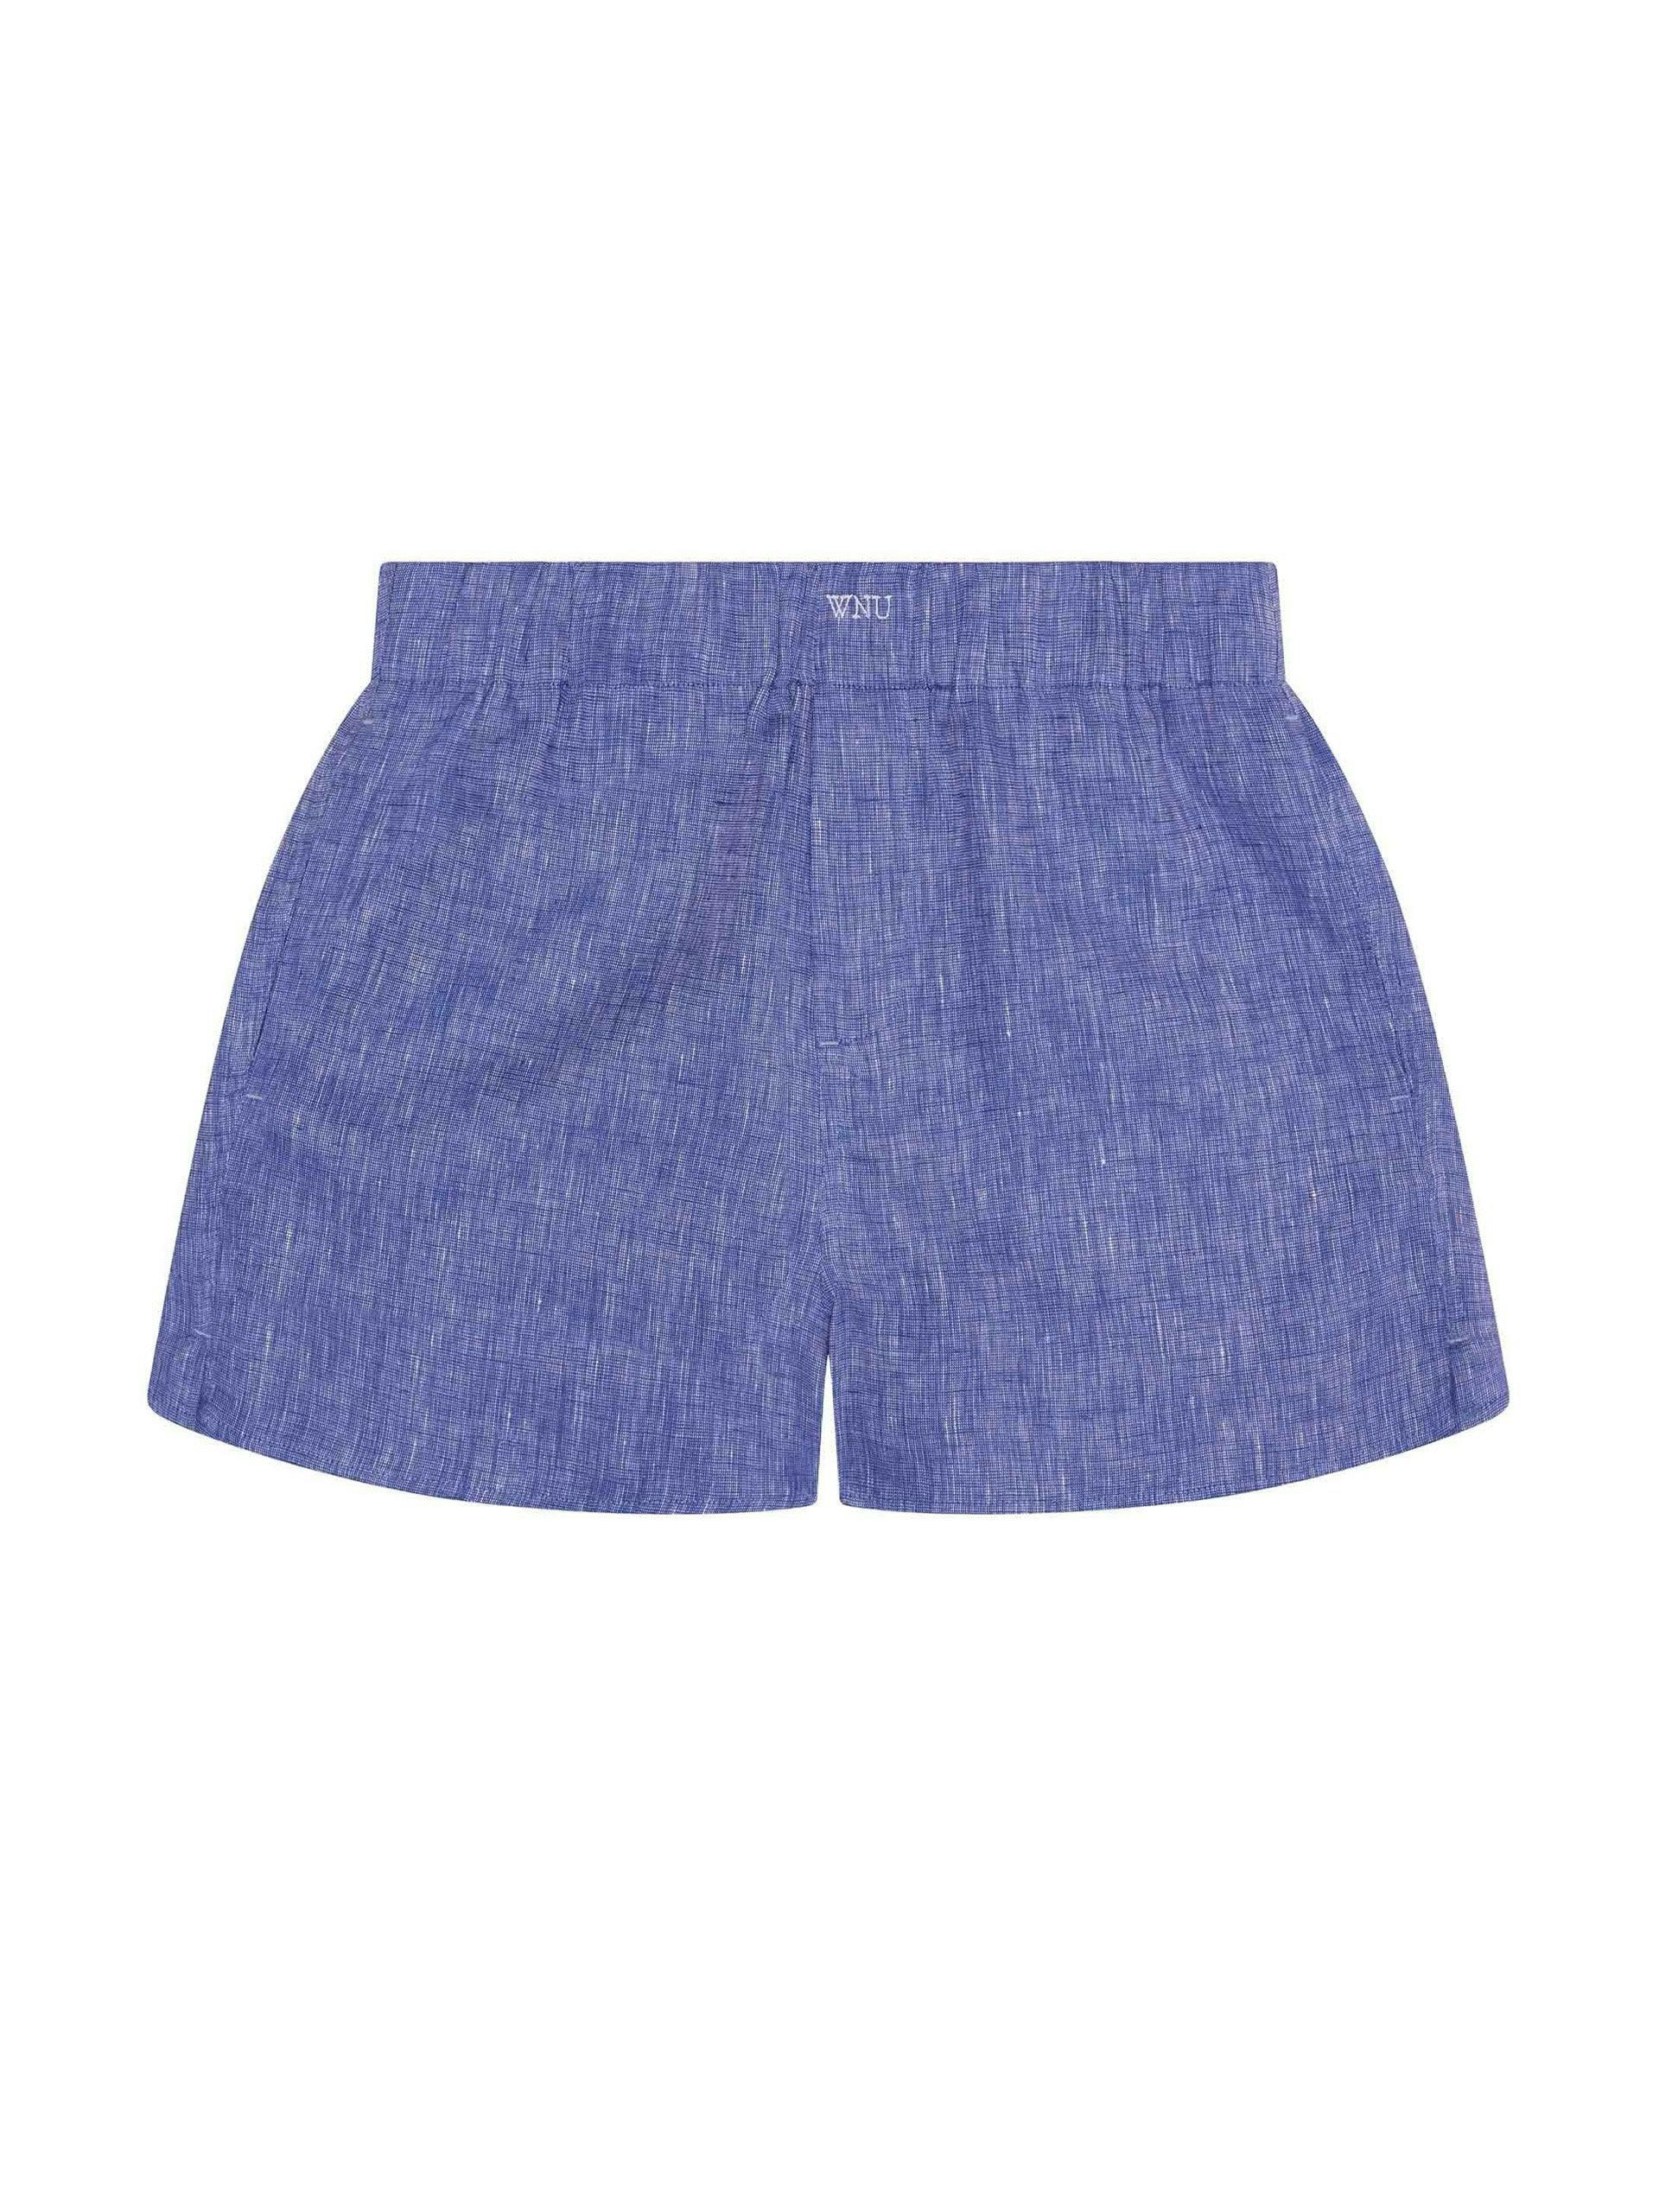 The Short: lapis blue linen